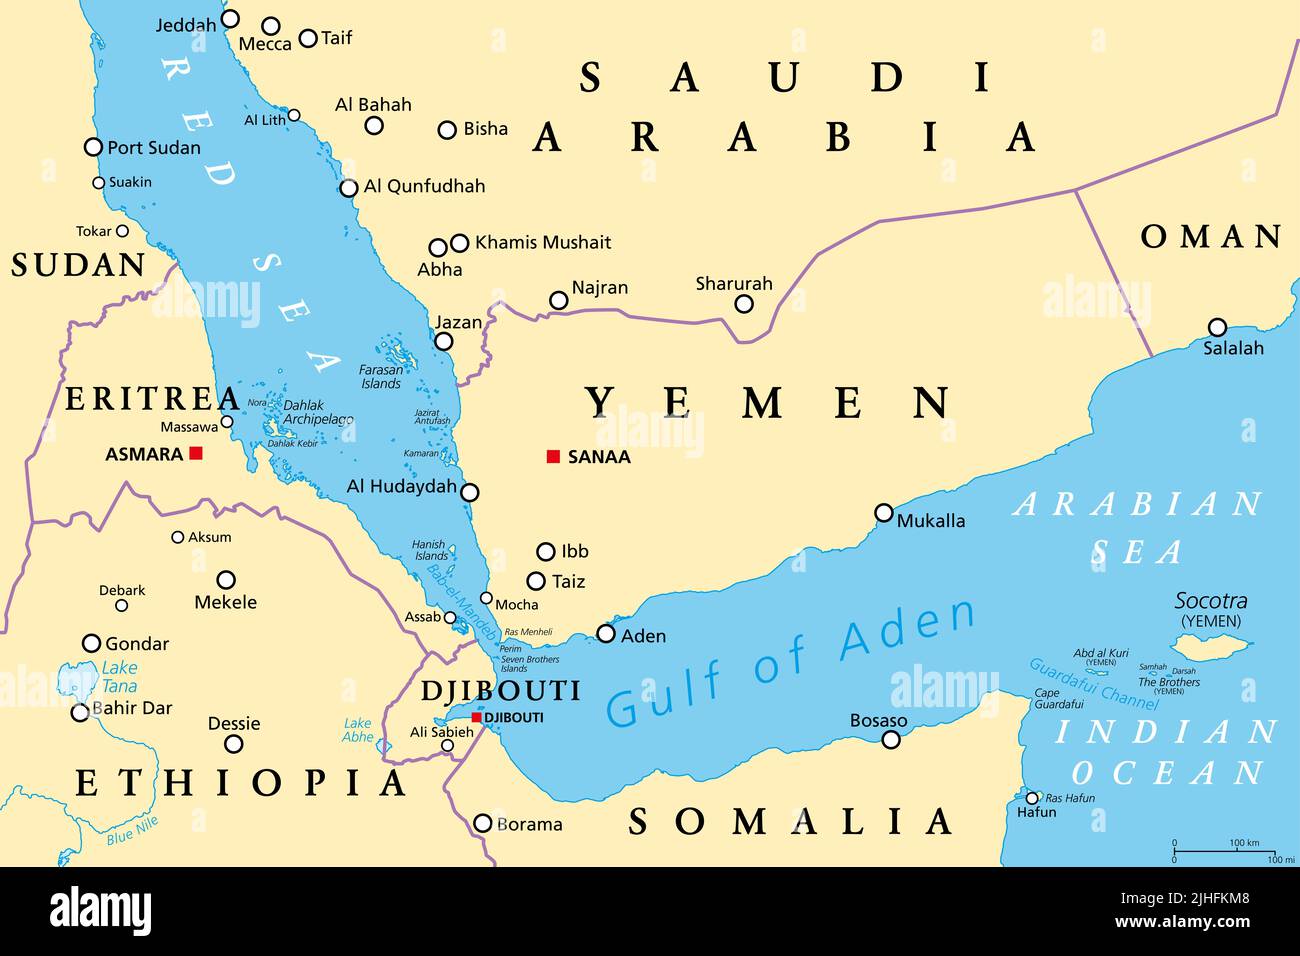 Area del Golfo di Aden, mappa politica. Golfo tra Yemen, Gibuti, il canale di Guardafui, Socotra e Somalia, che collega l'Arabia e il Mar Rosso. Foto Stock